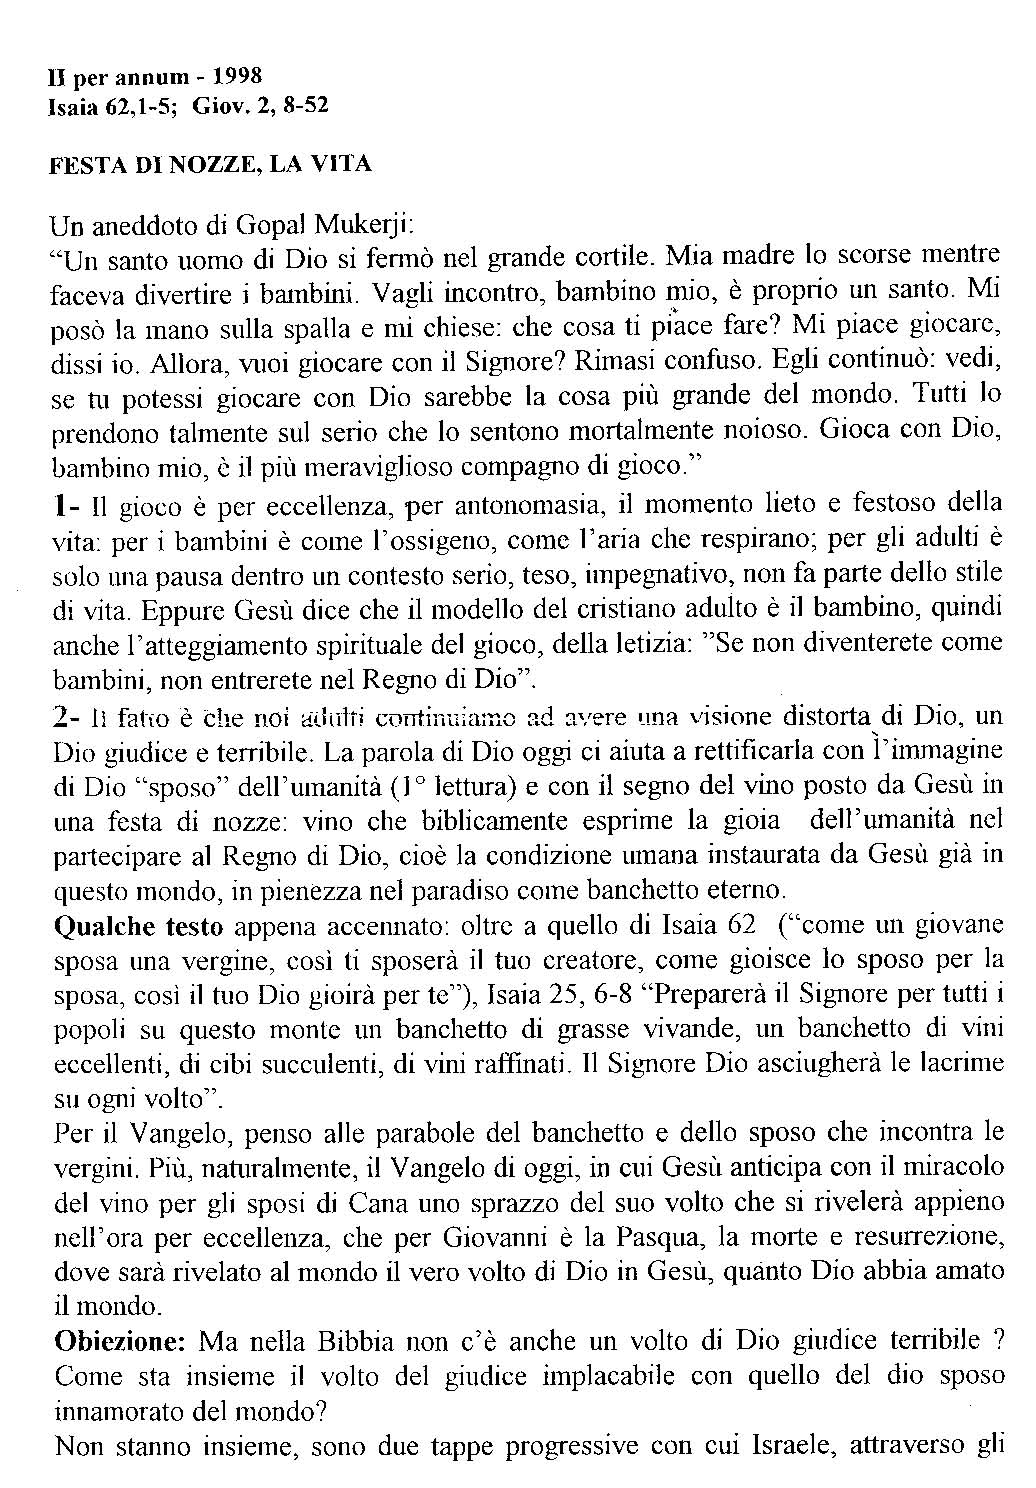 1998_Festa_di_nozze.pdf